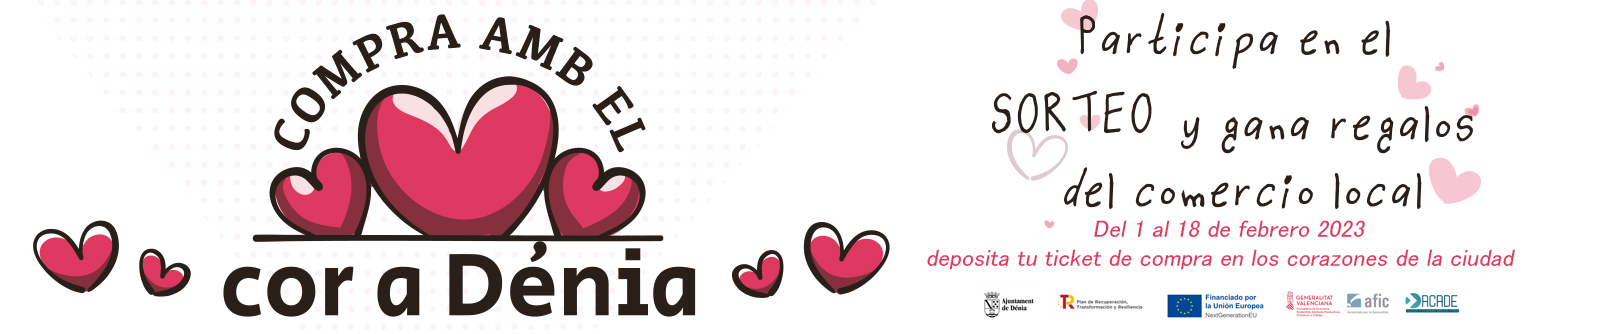 Campaña “Compra amb el cor a Dénia”